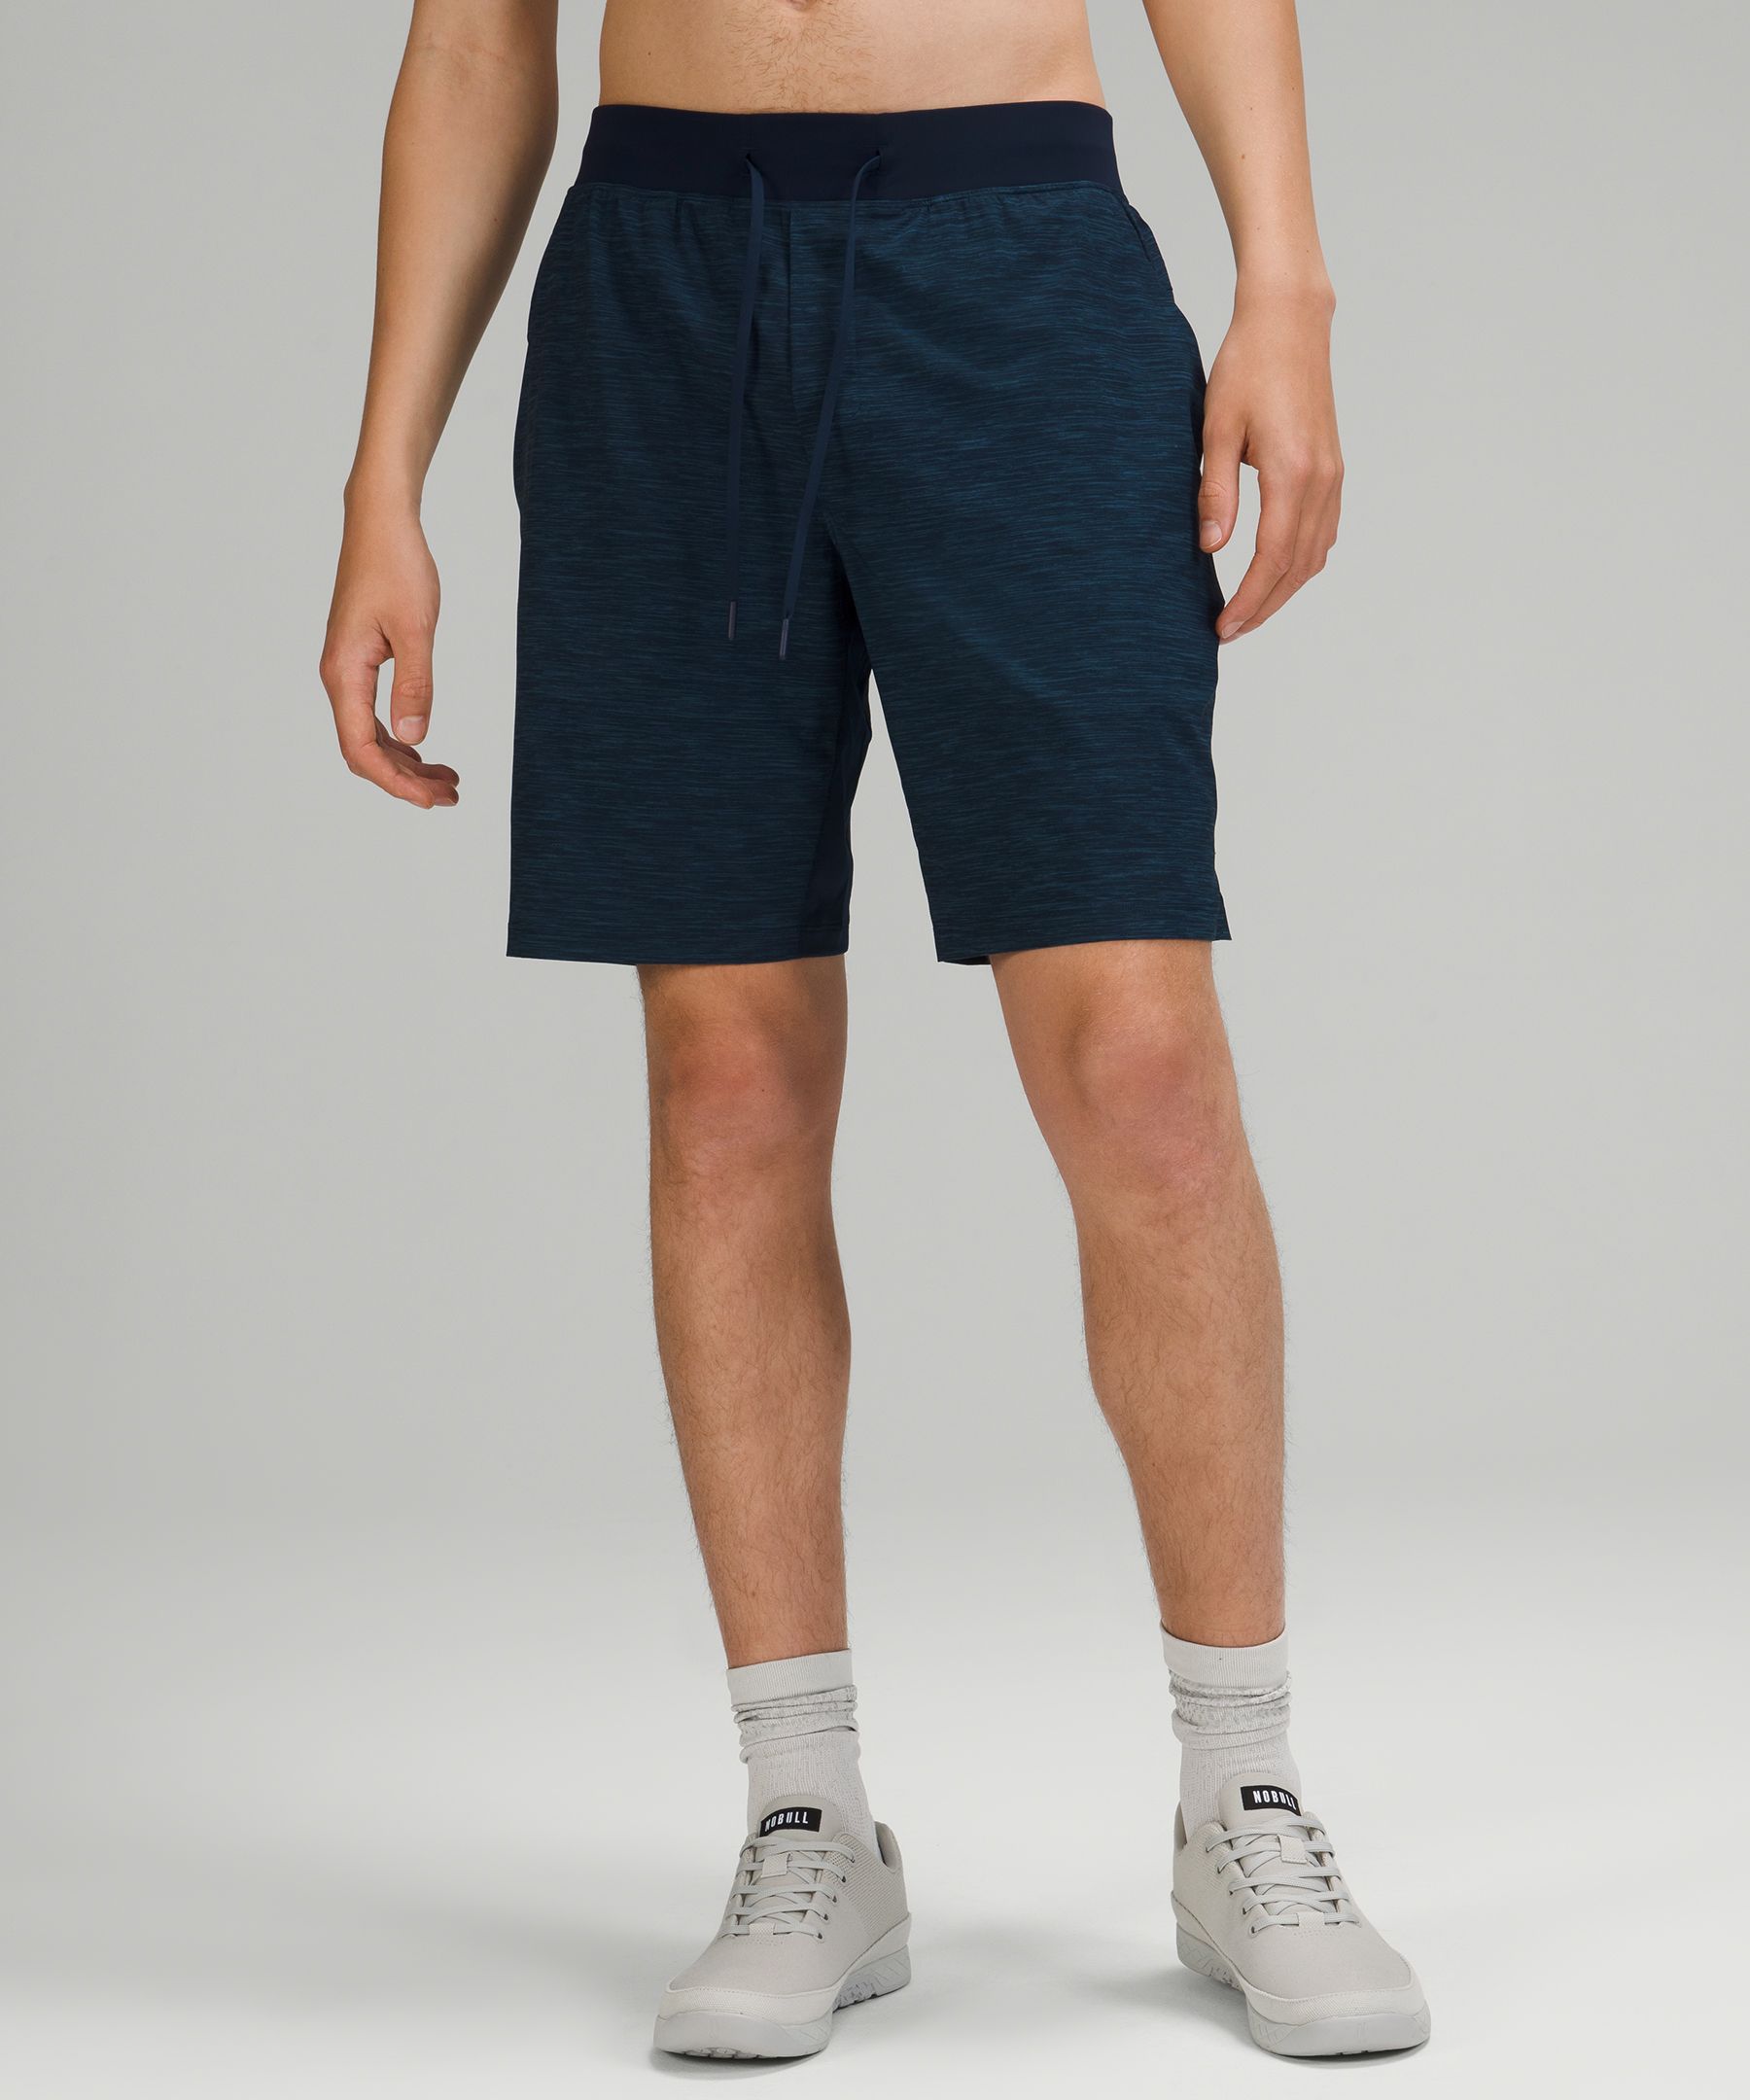 lululemon 11 inch shorts